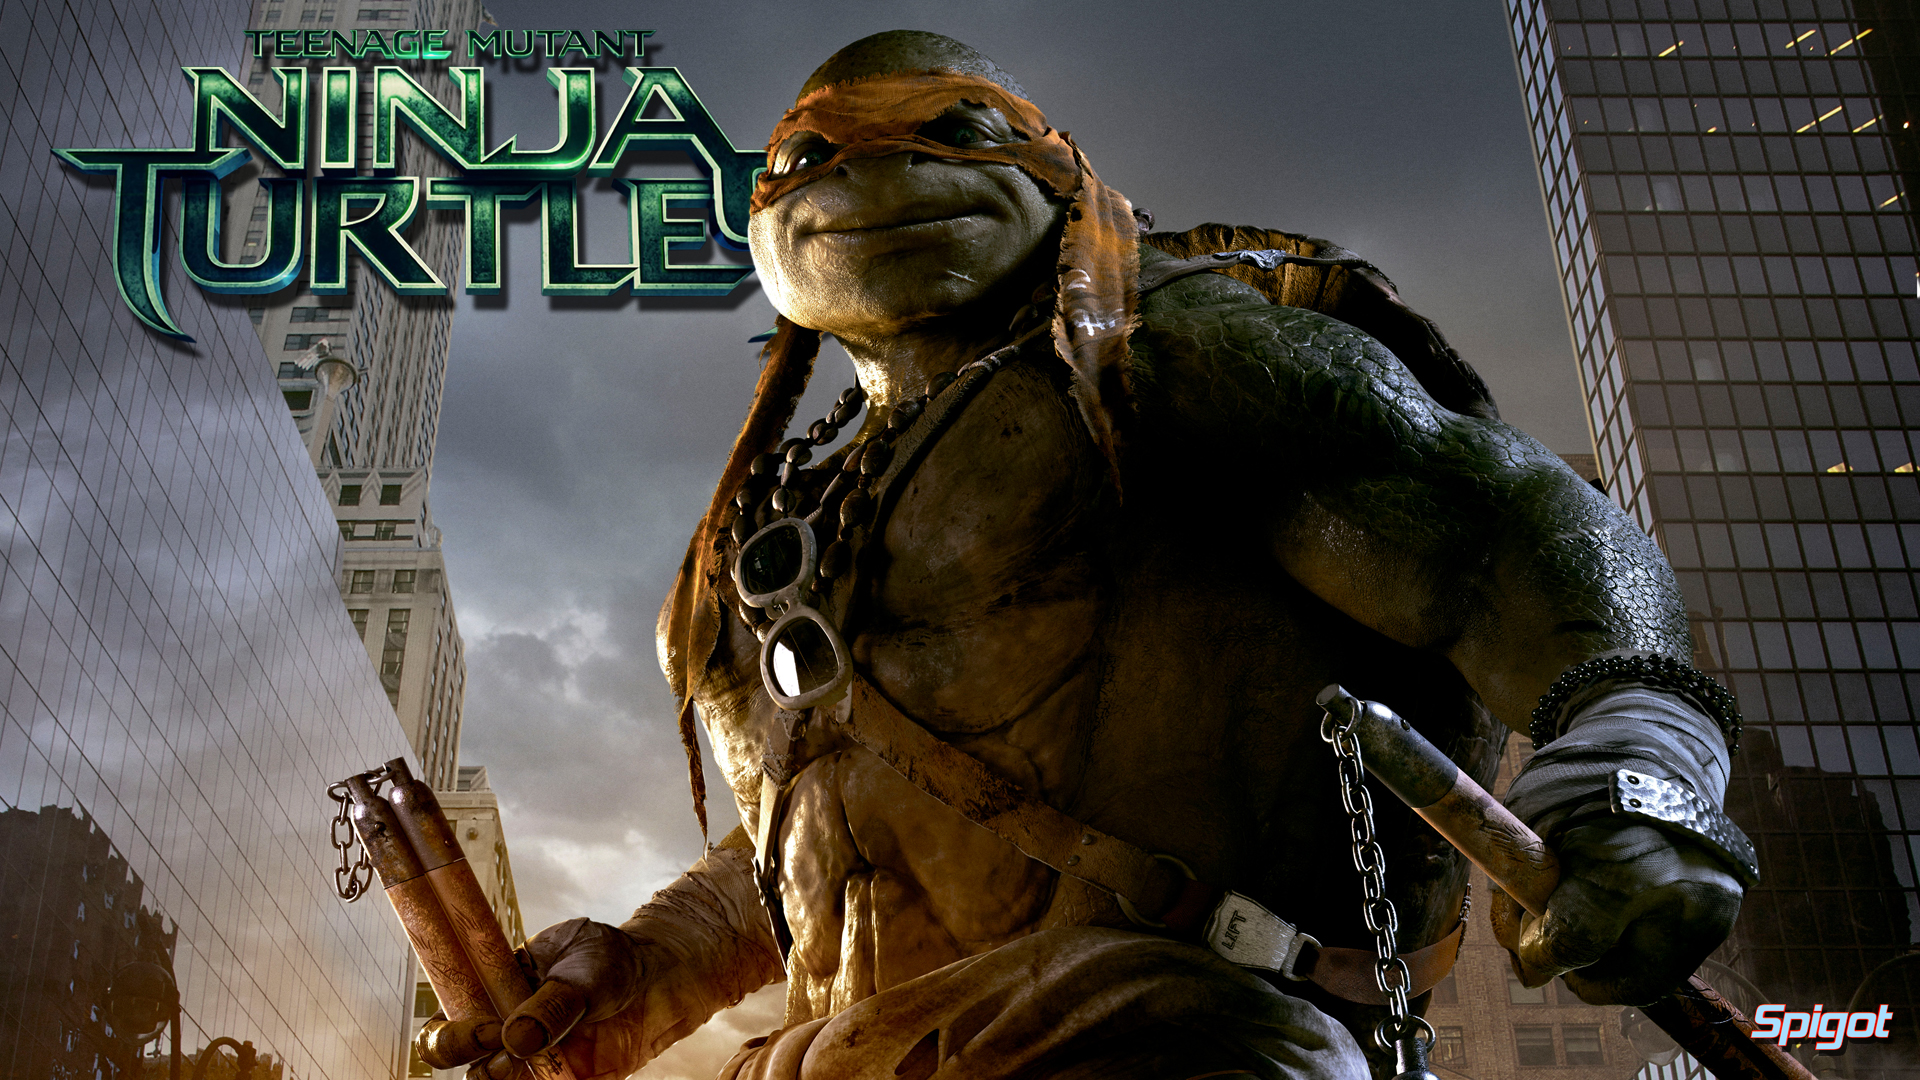 Teenage Mutant Ninja Turtles George Spigot S